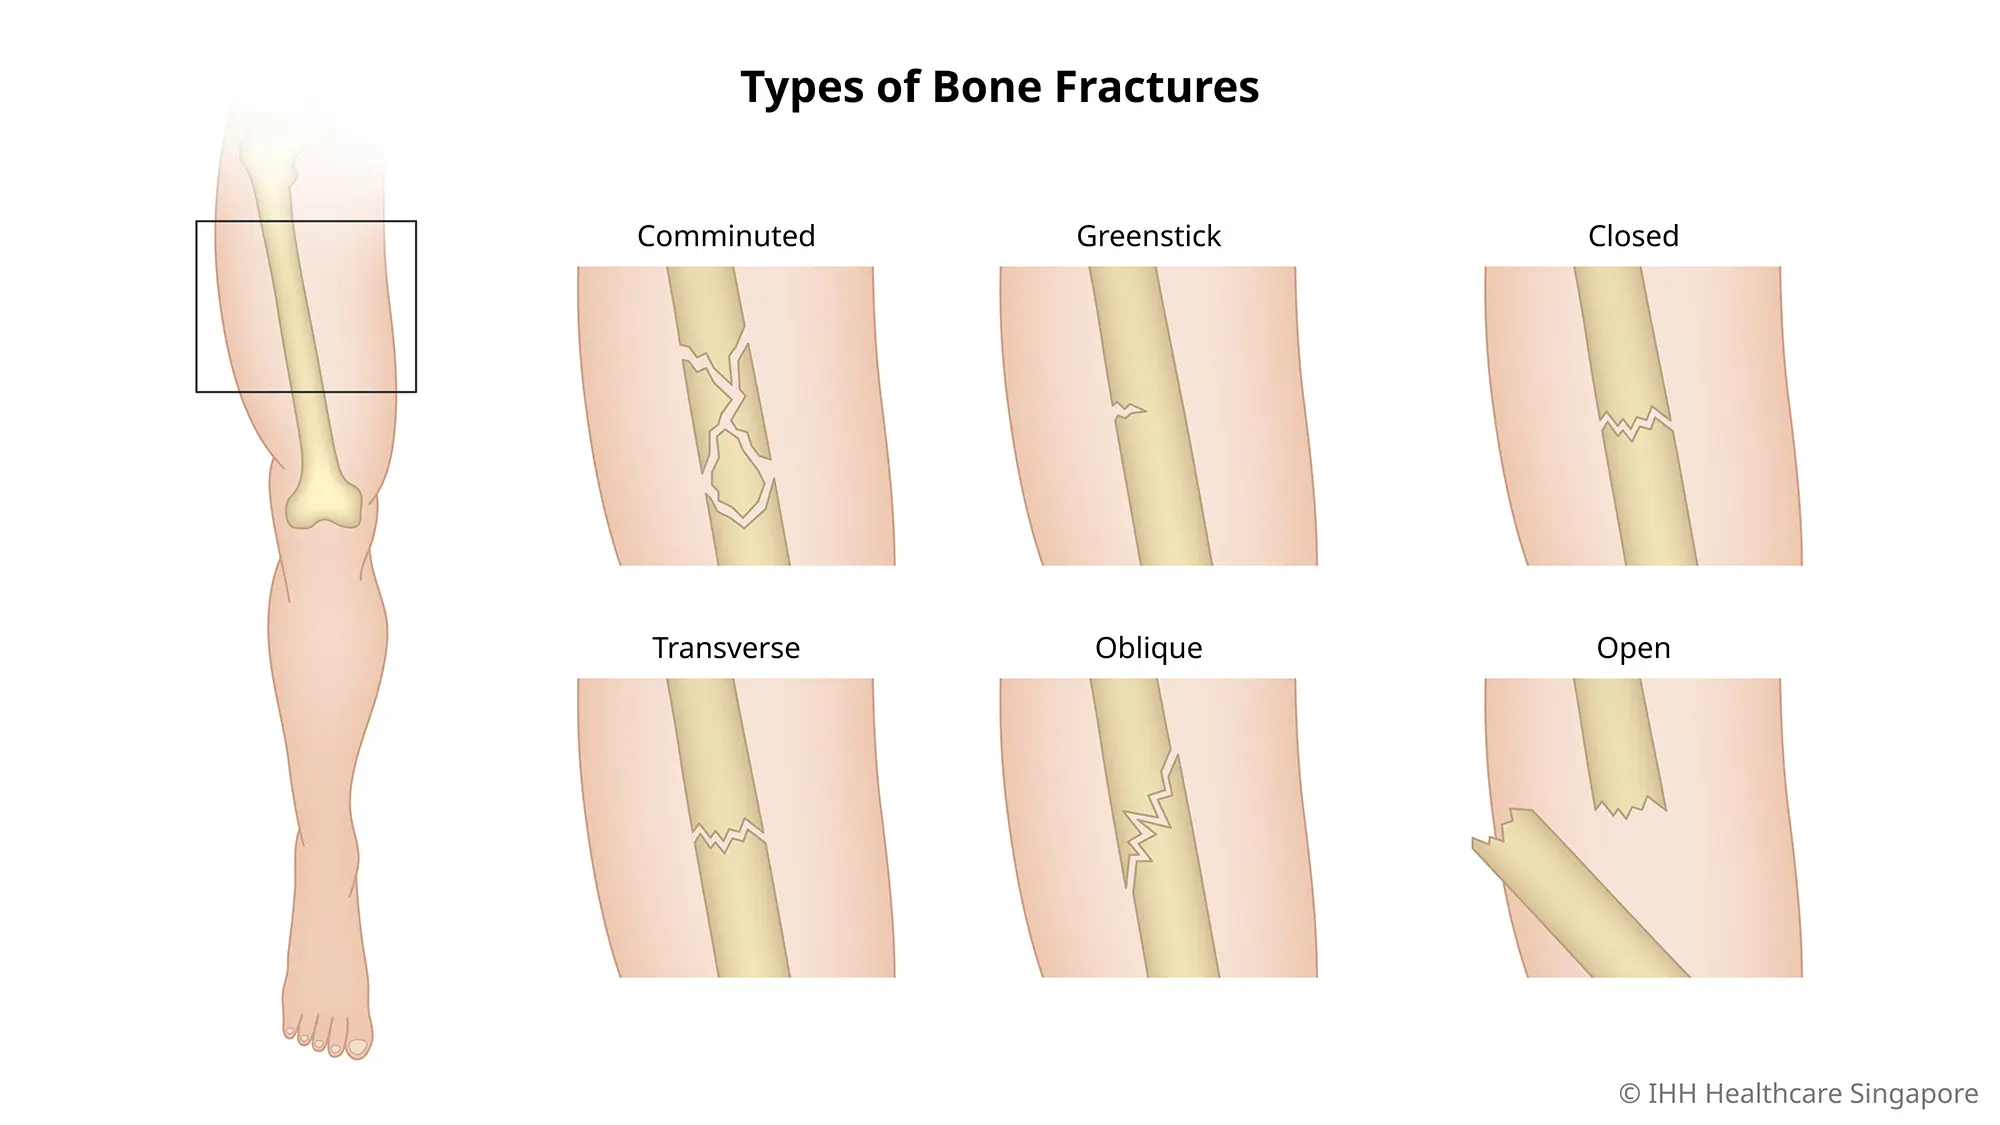 Hình minh họa các loại gãy xương khác nhau.